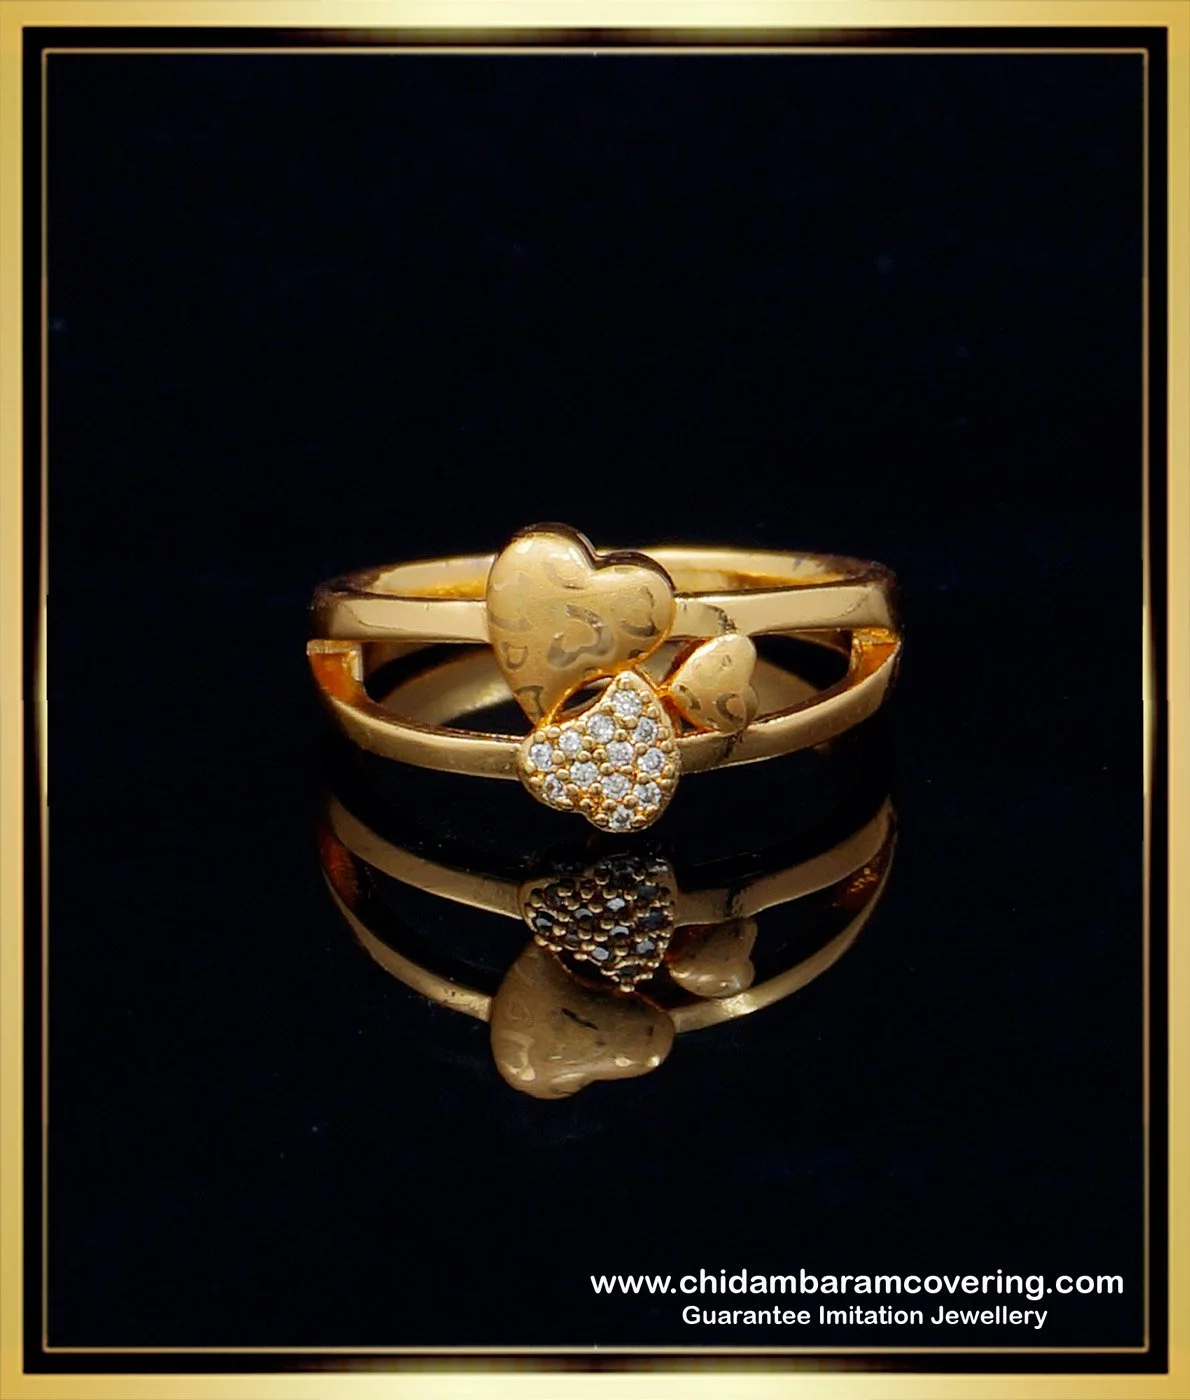 Designer Diamond Rings - 9 New and Beautiful Designs for Women | Stylish  jewelry, Beautiful jewelry, Gold jewelry fashion